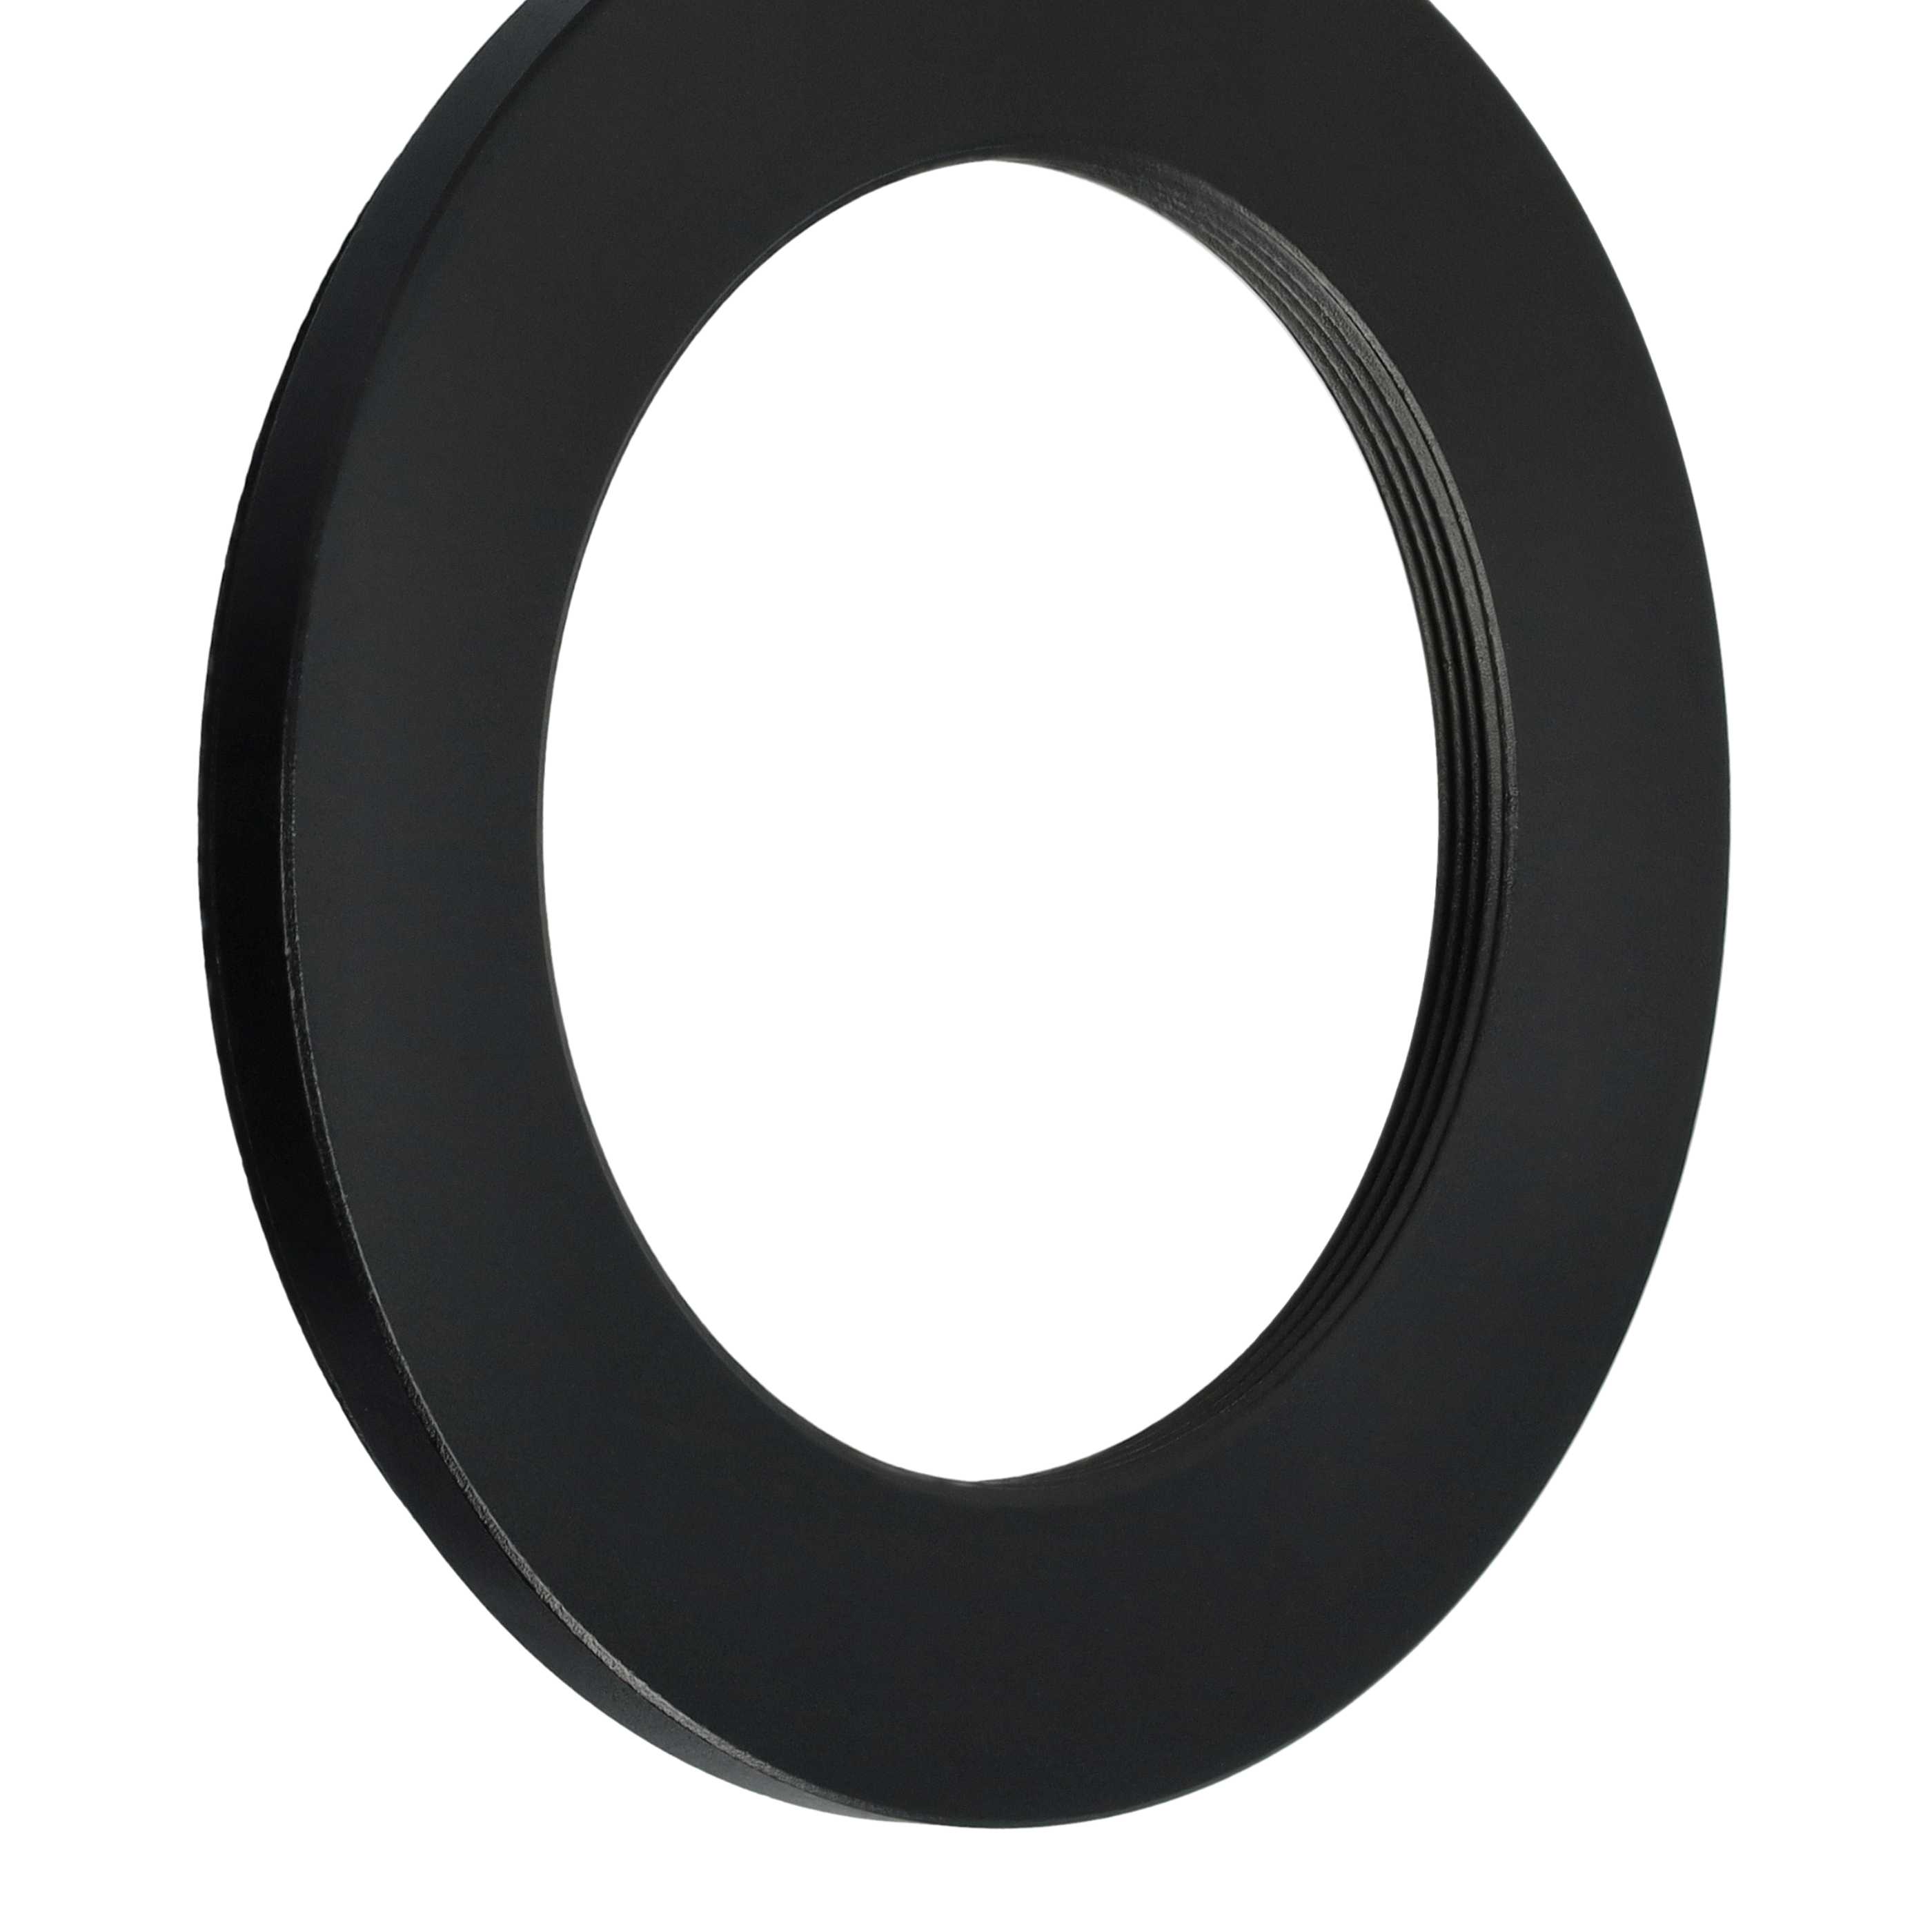 Anillo adaptador Step Down de 62 mm a 43 mm para objetivo de la cámara - Adaptador de filtro, metal, negro